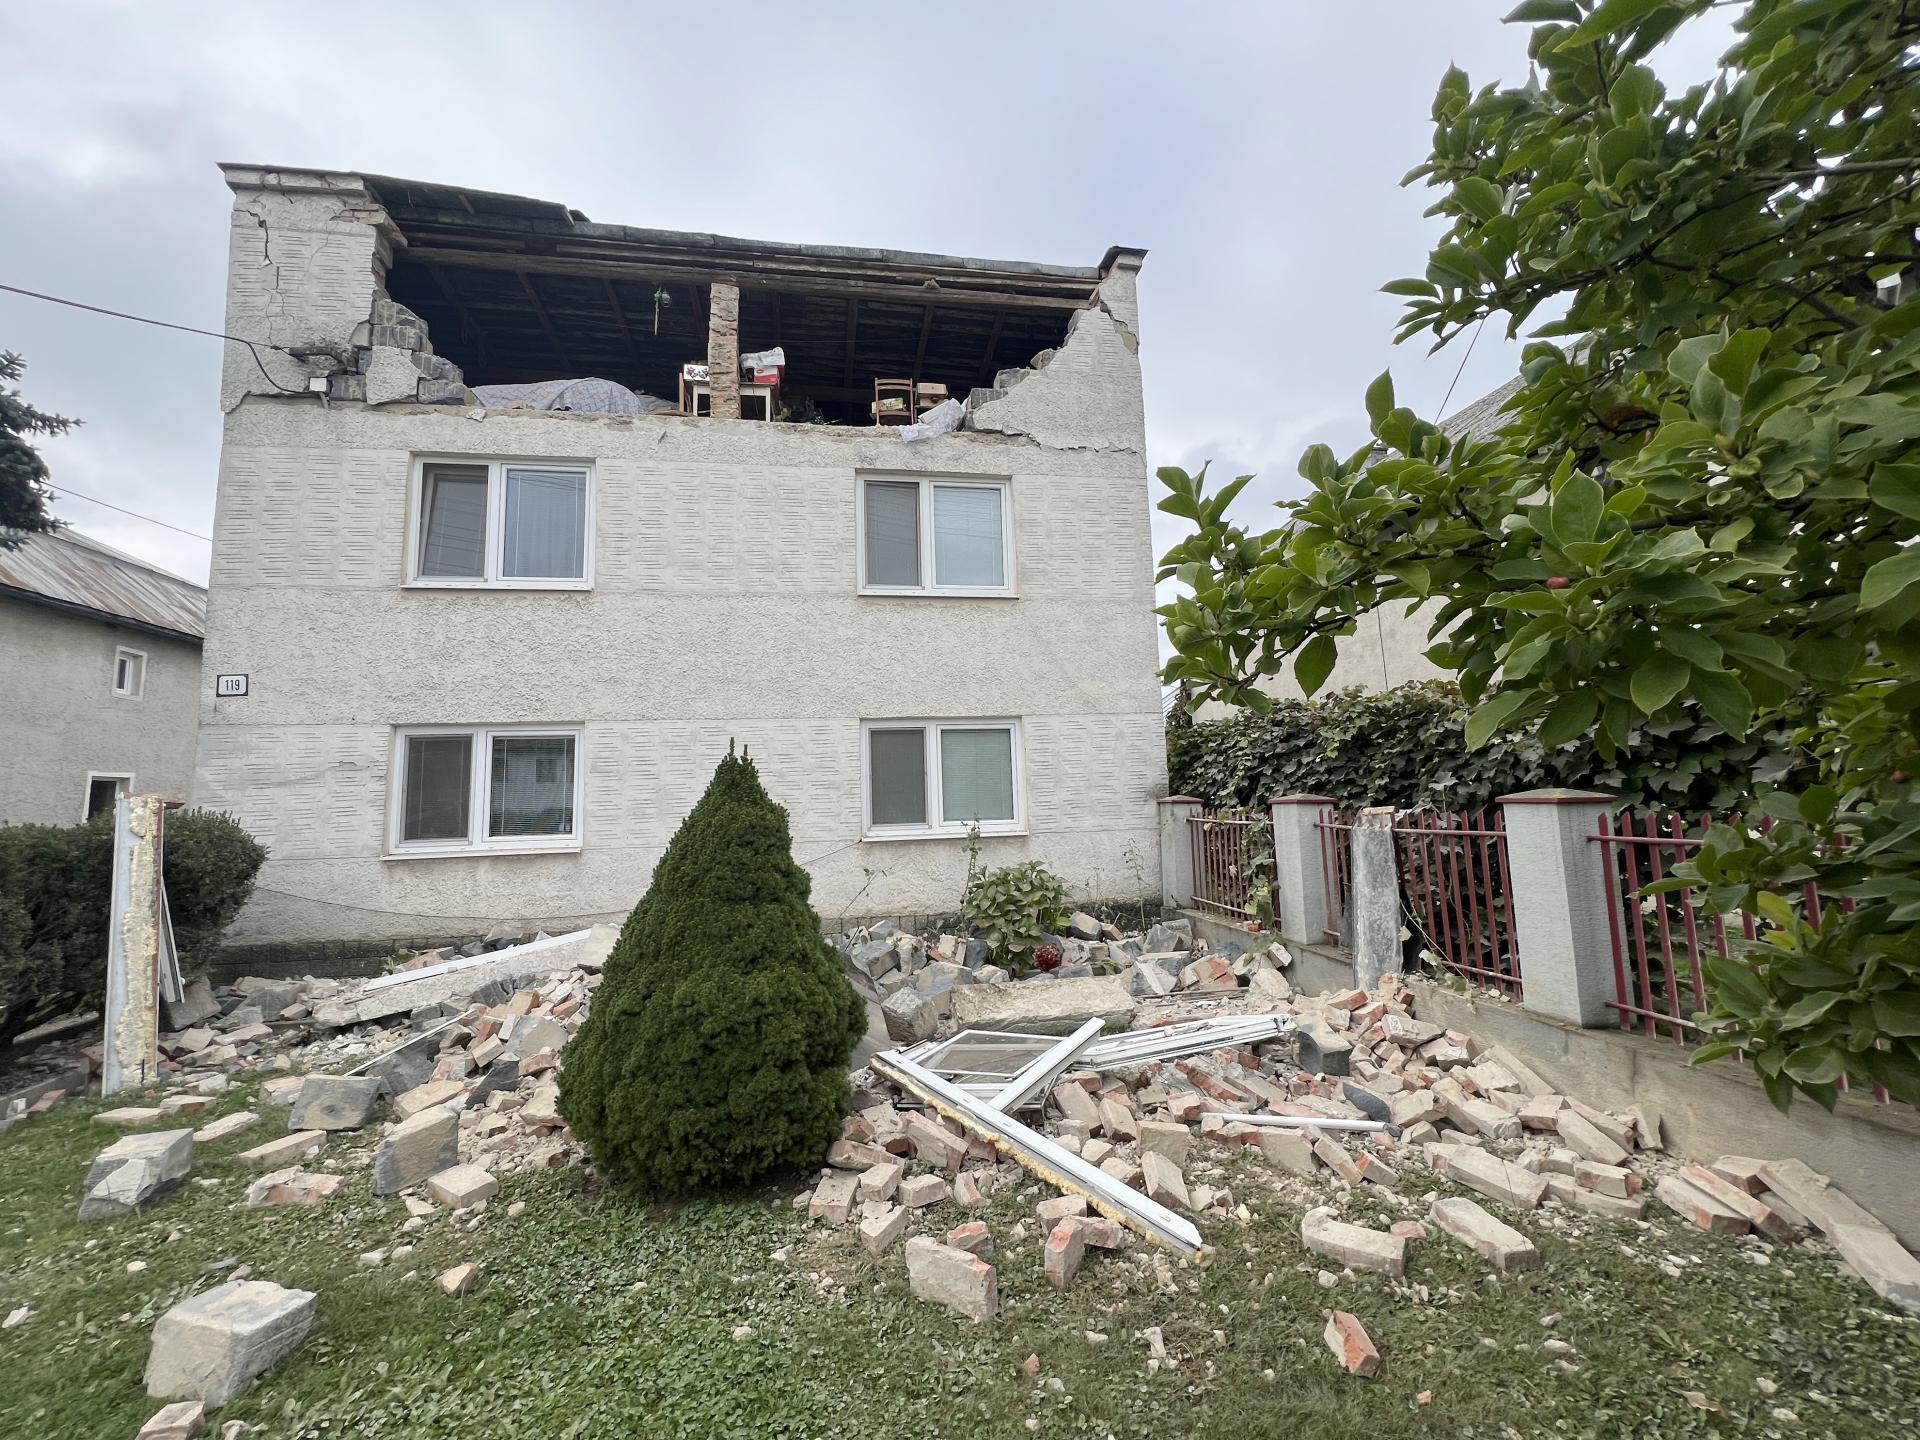 Zemetrasenie na východe zničilo domy aj utrhlo loď, mimoriadna situácia platí v celom Prešovskom kraji